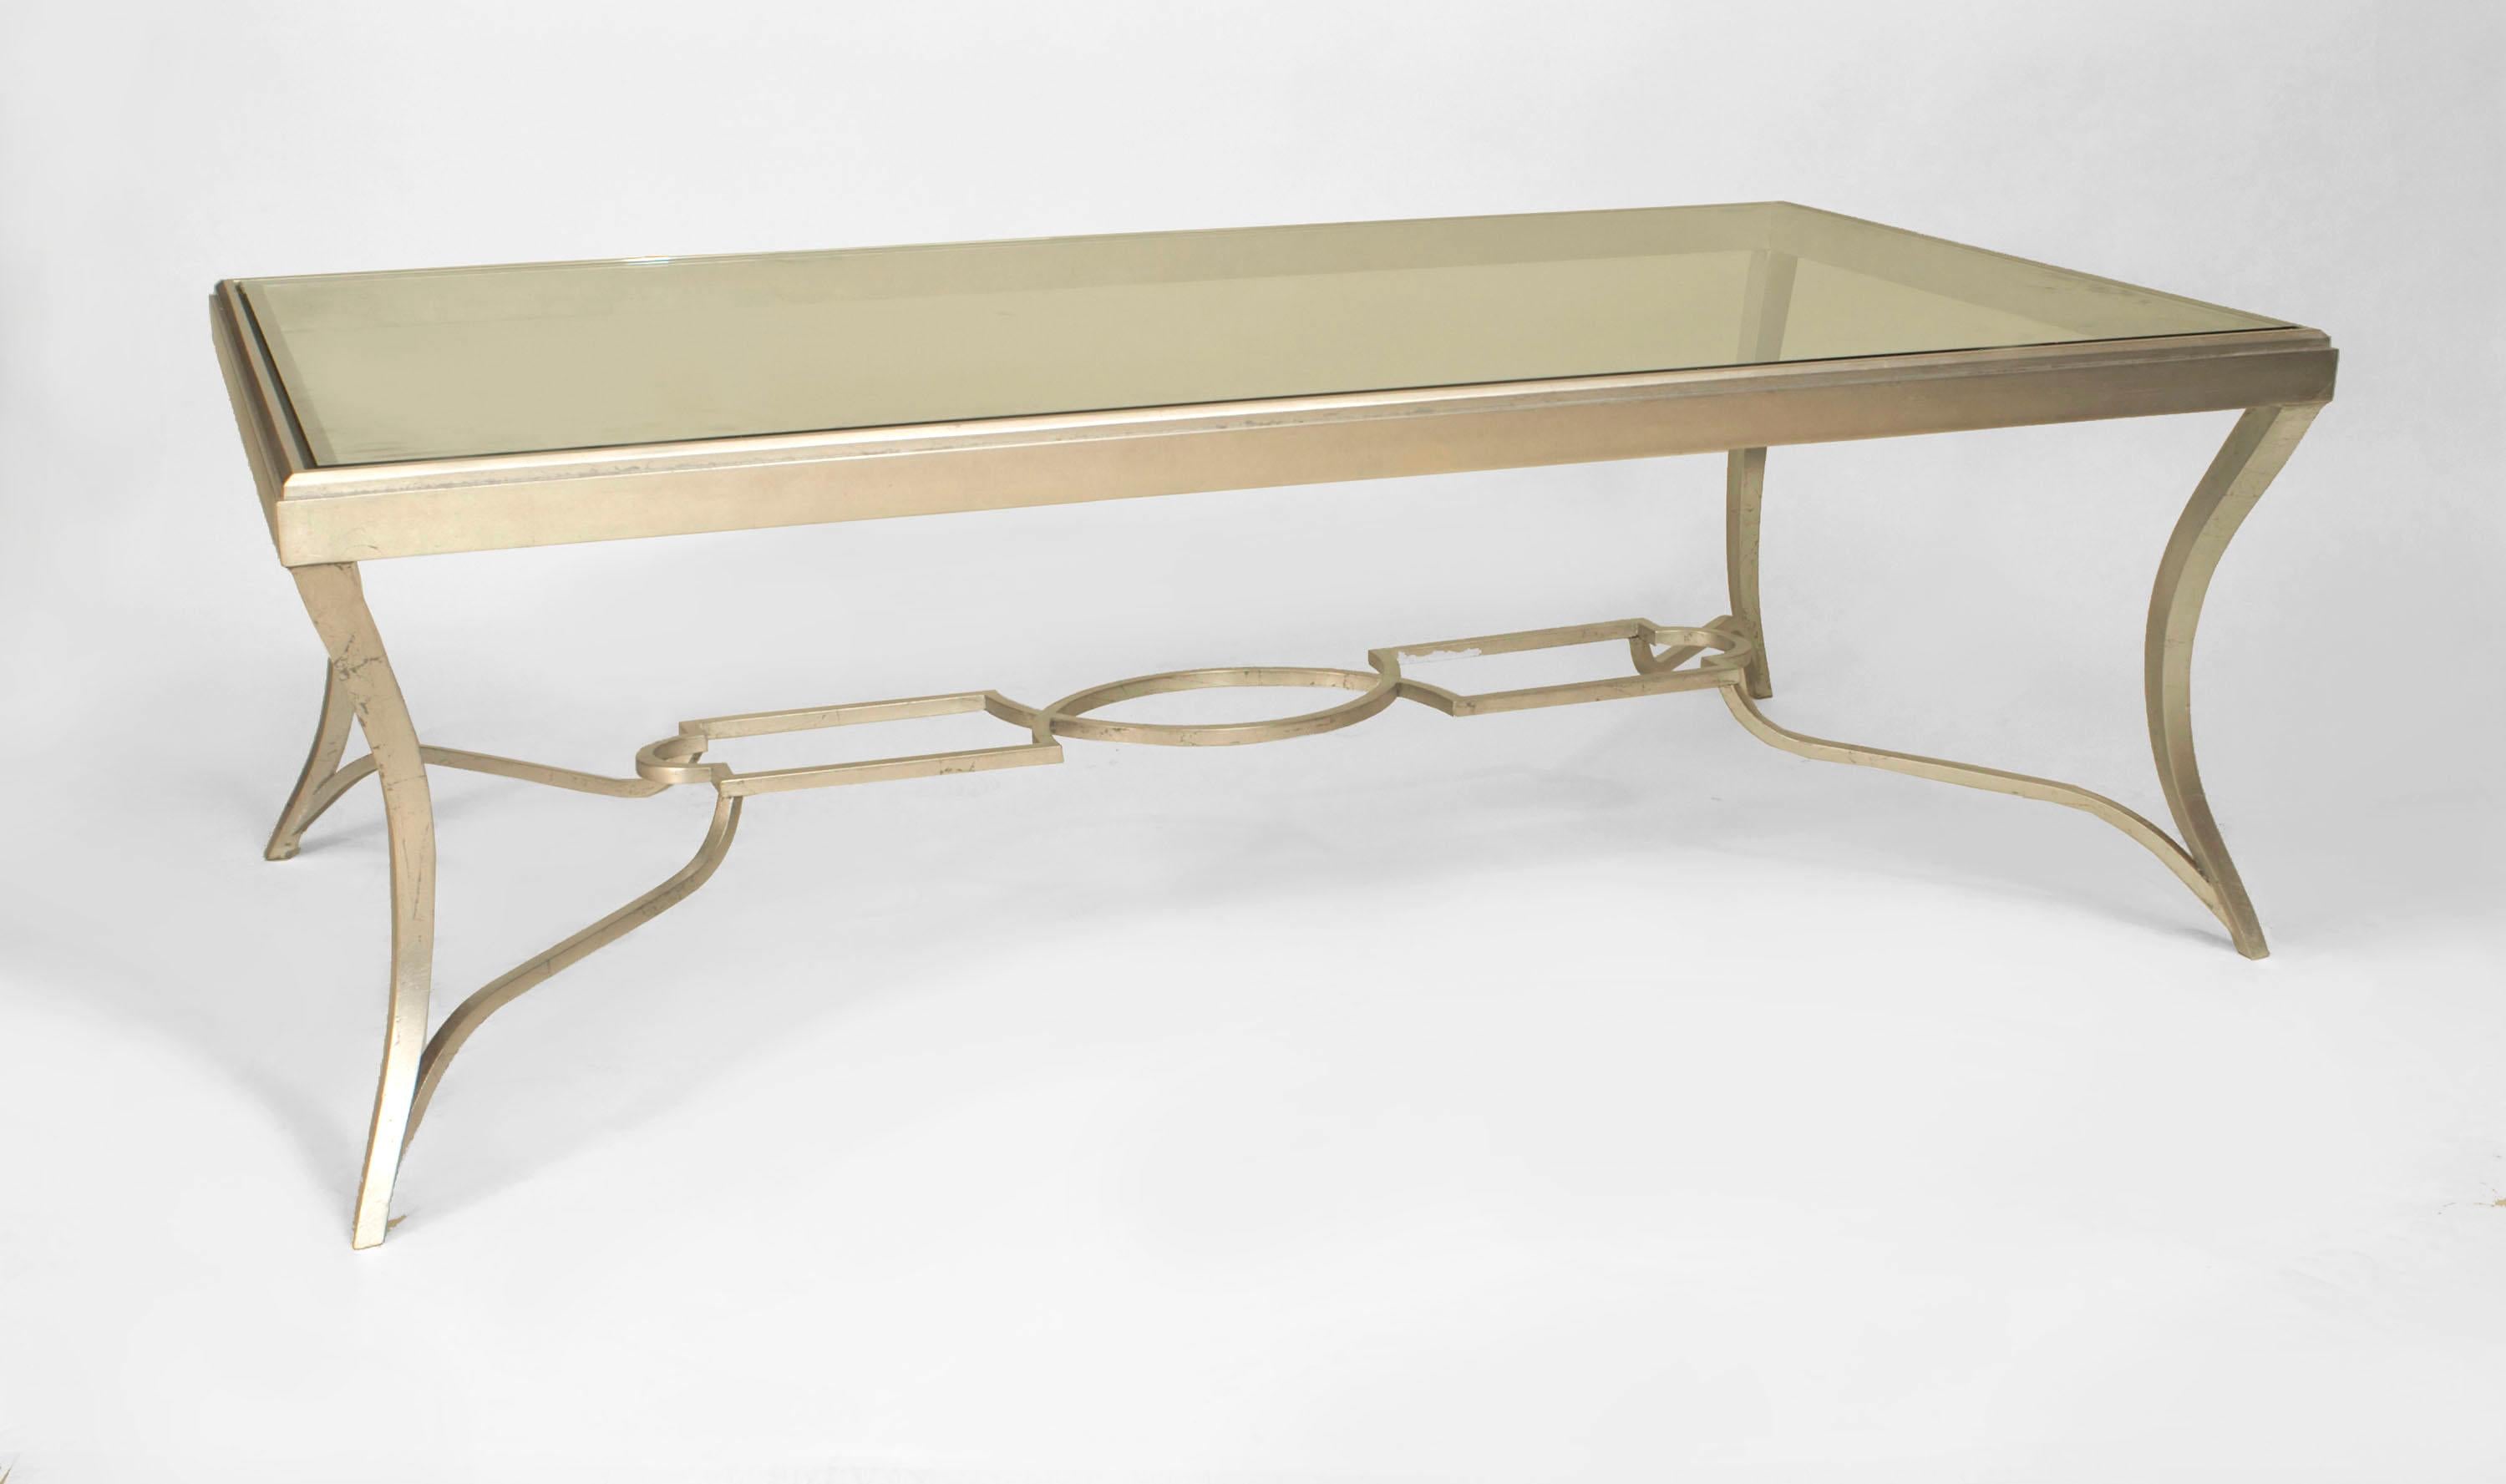 Table basse rectangulaire de style Art Moderne avec une base en bronze patiné argenté, quatre pieds cabriole, et un brancard ajouré avec un plateau en verre inséré.
